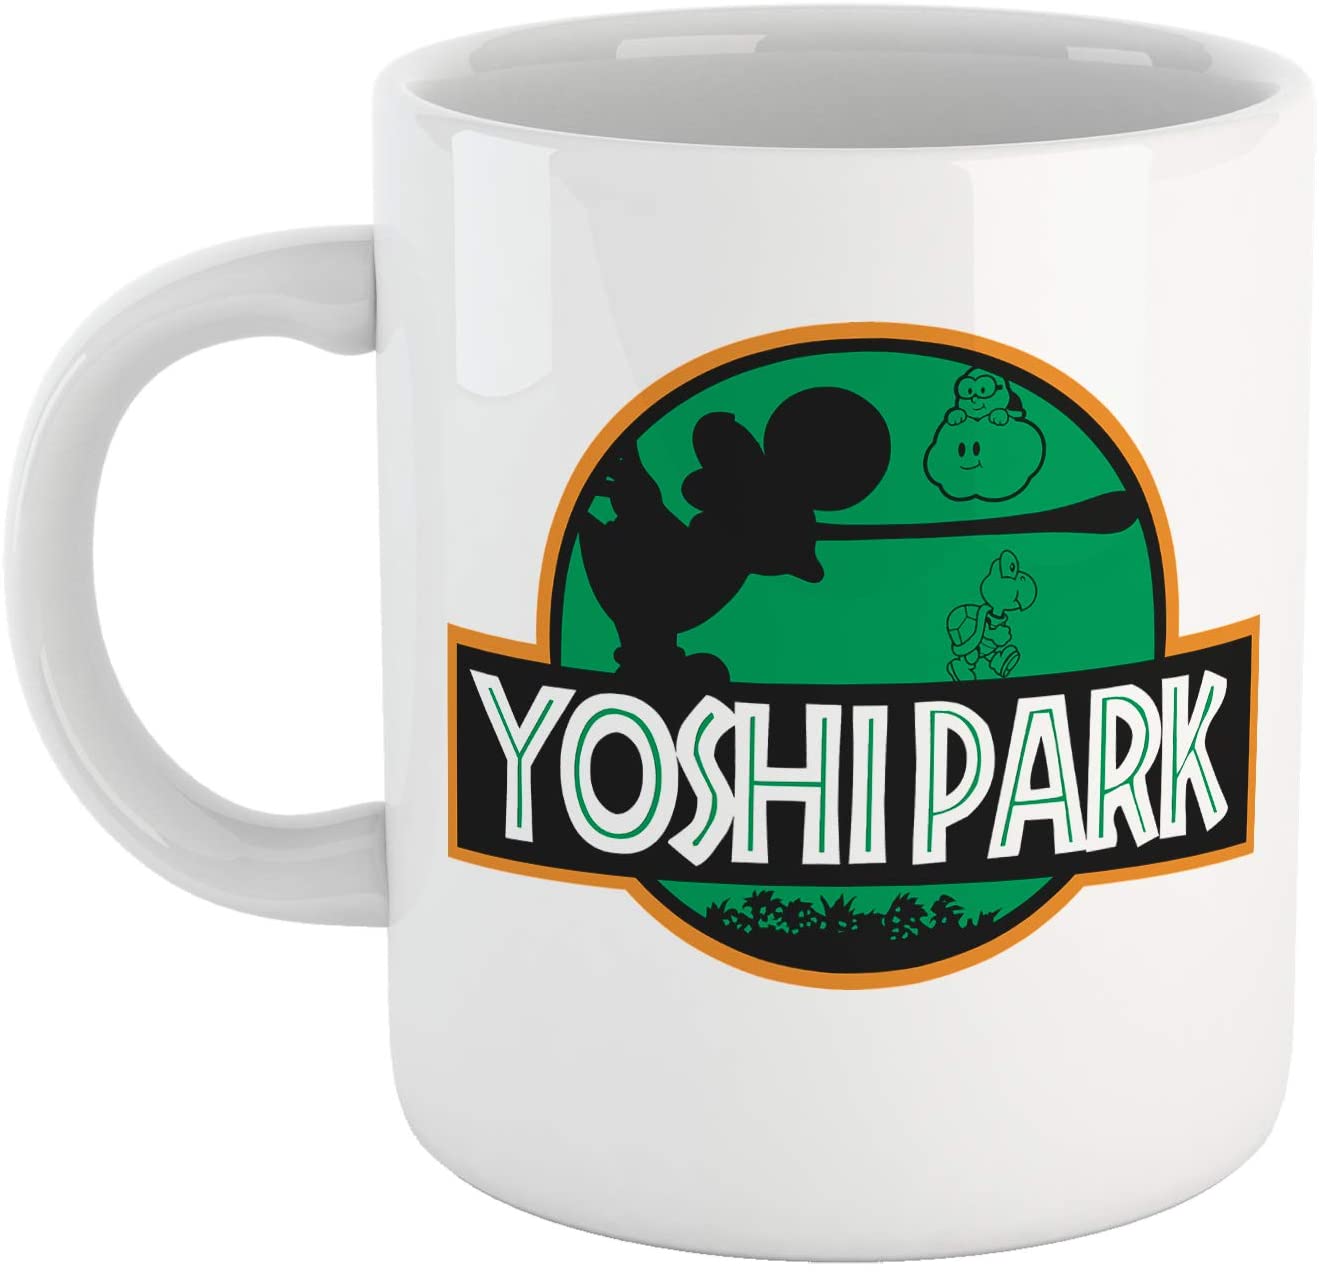 Sea Green Tazza Yoshi Park - Mug Divertente per Gli Amanti dei Videogiochi - Choose ur Color Cuc shop